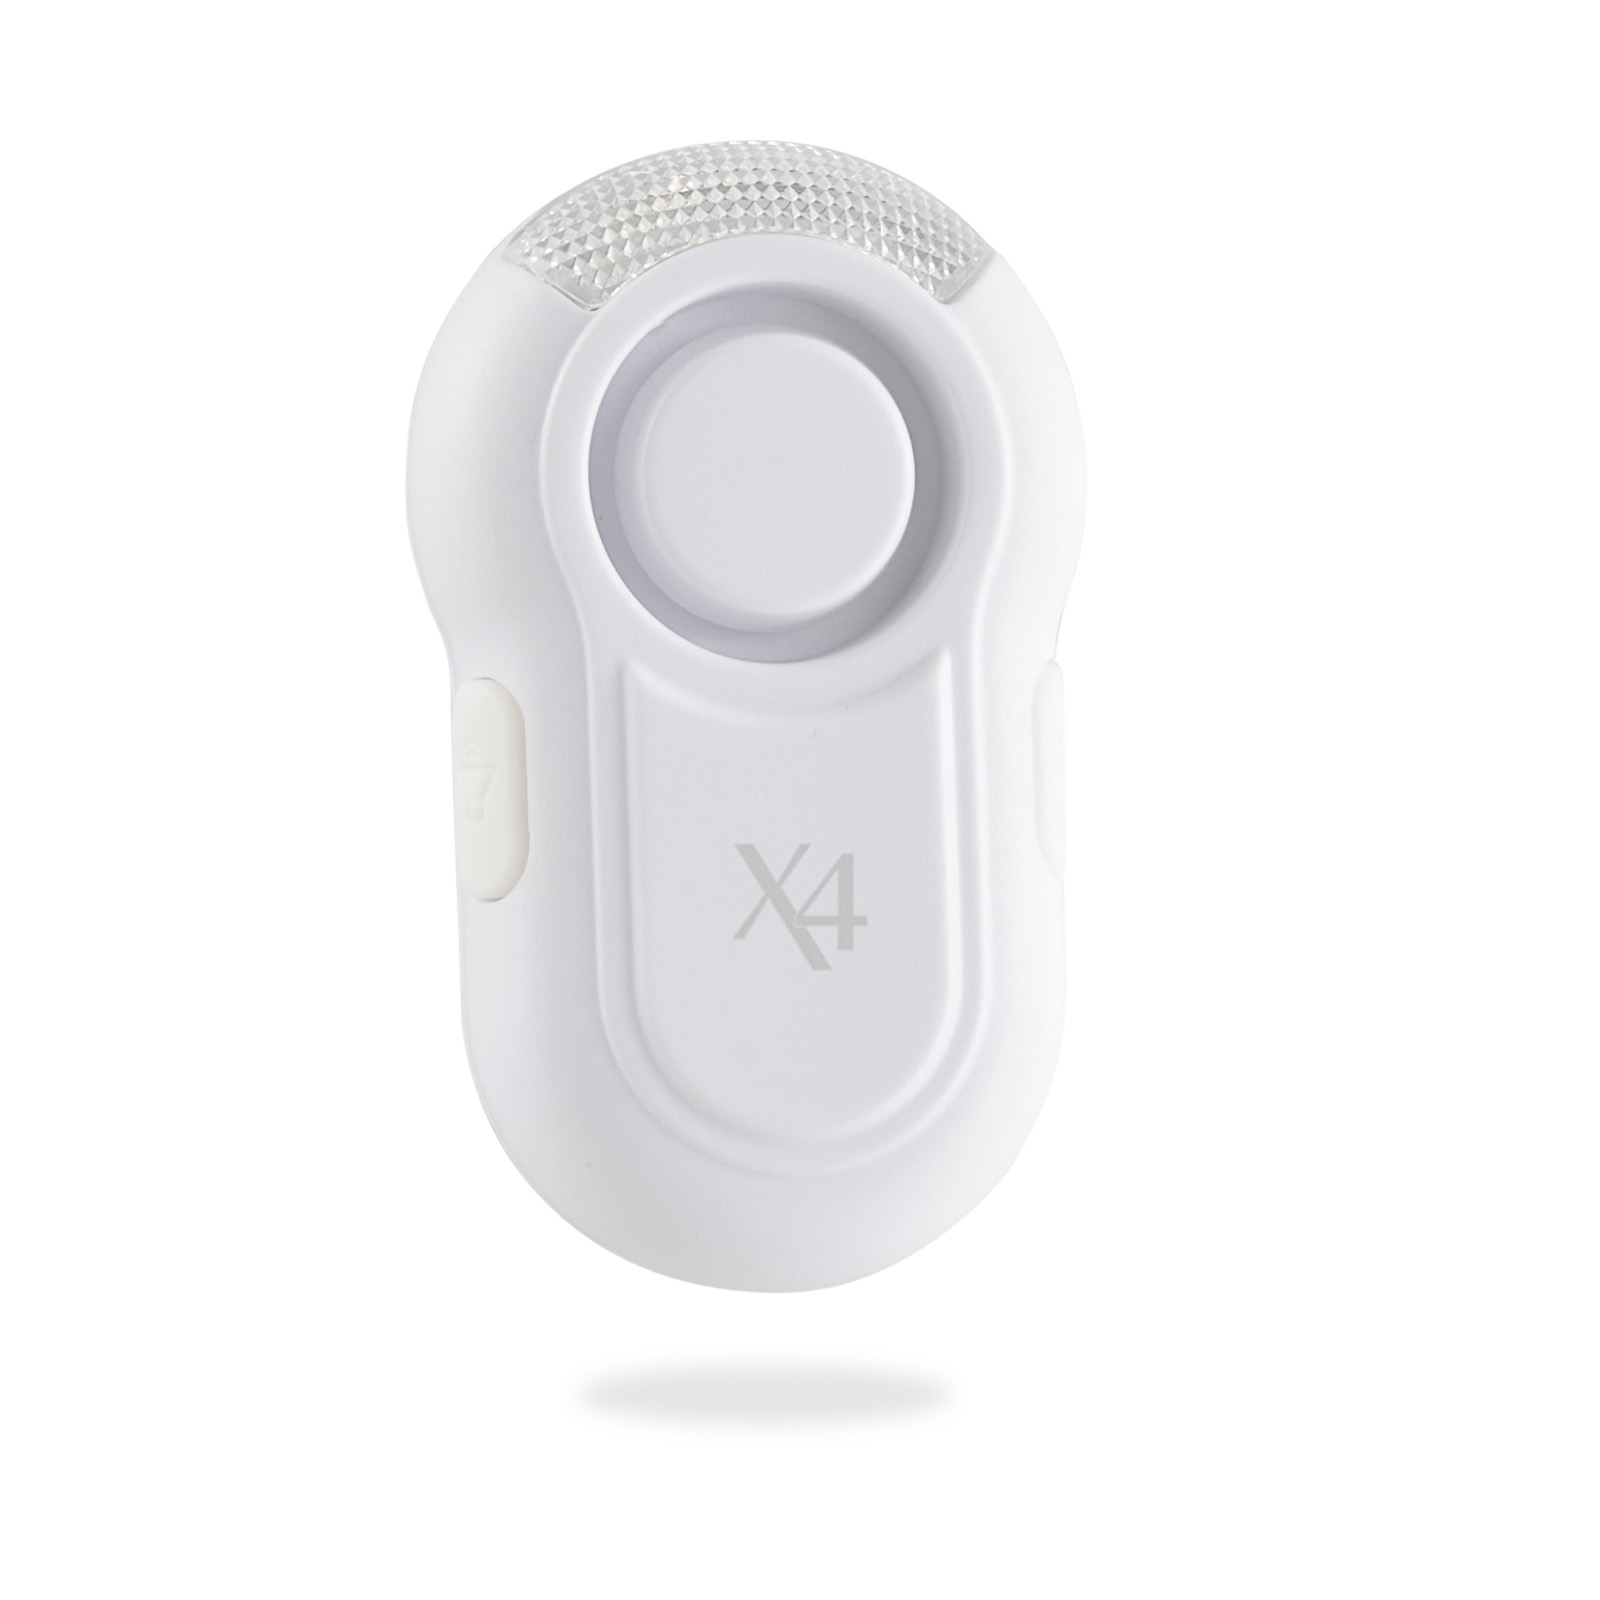 X4-LIFE Personen-Sicherheitsalarm 115 dB mit Clip-Halter und optischem Signal zur Sichtbarkeit bei Dunkelheit oder Dämmerung